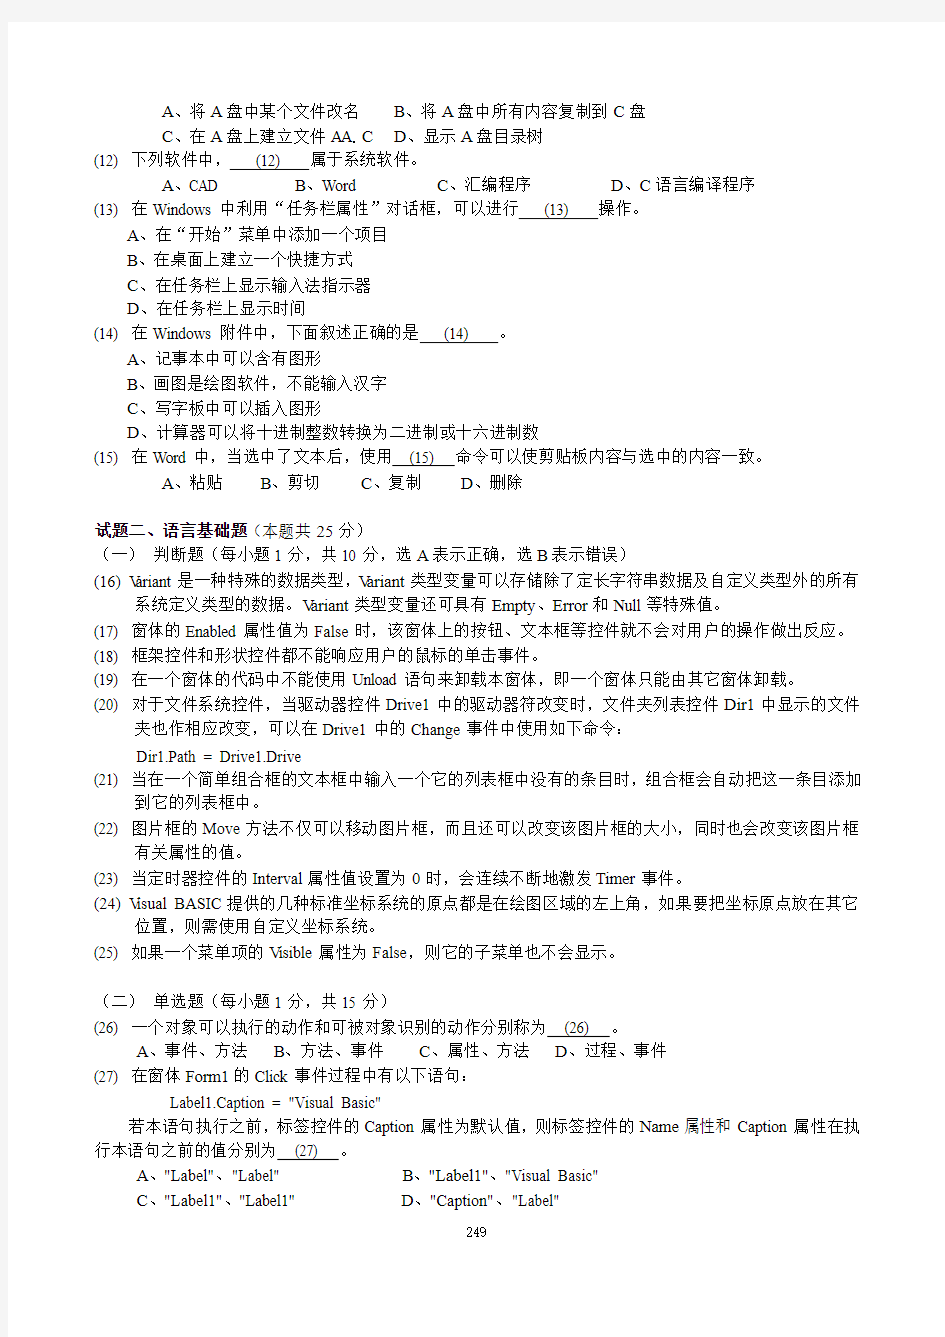 2001年秋浙江省高校计算机等级考试试卷 (二级Visual BASIC)